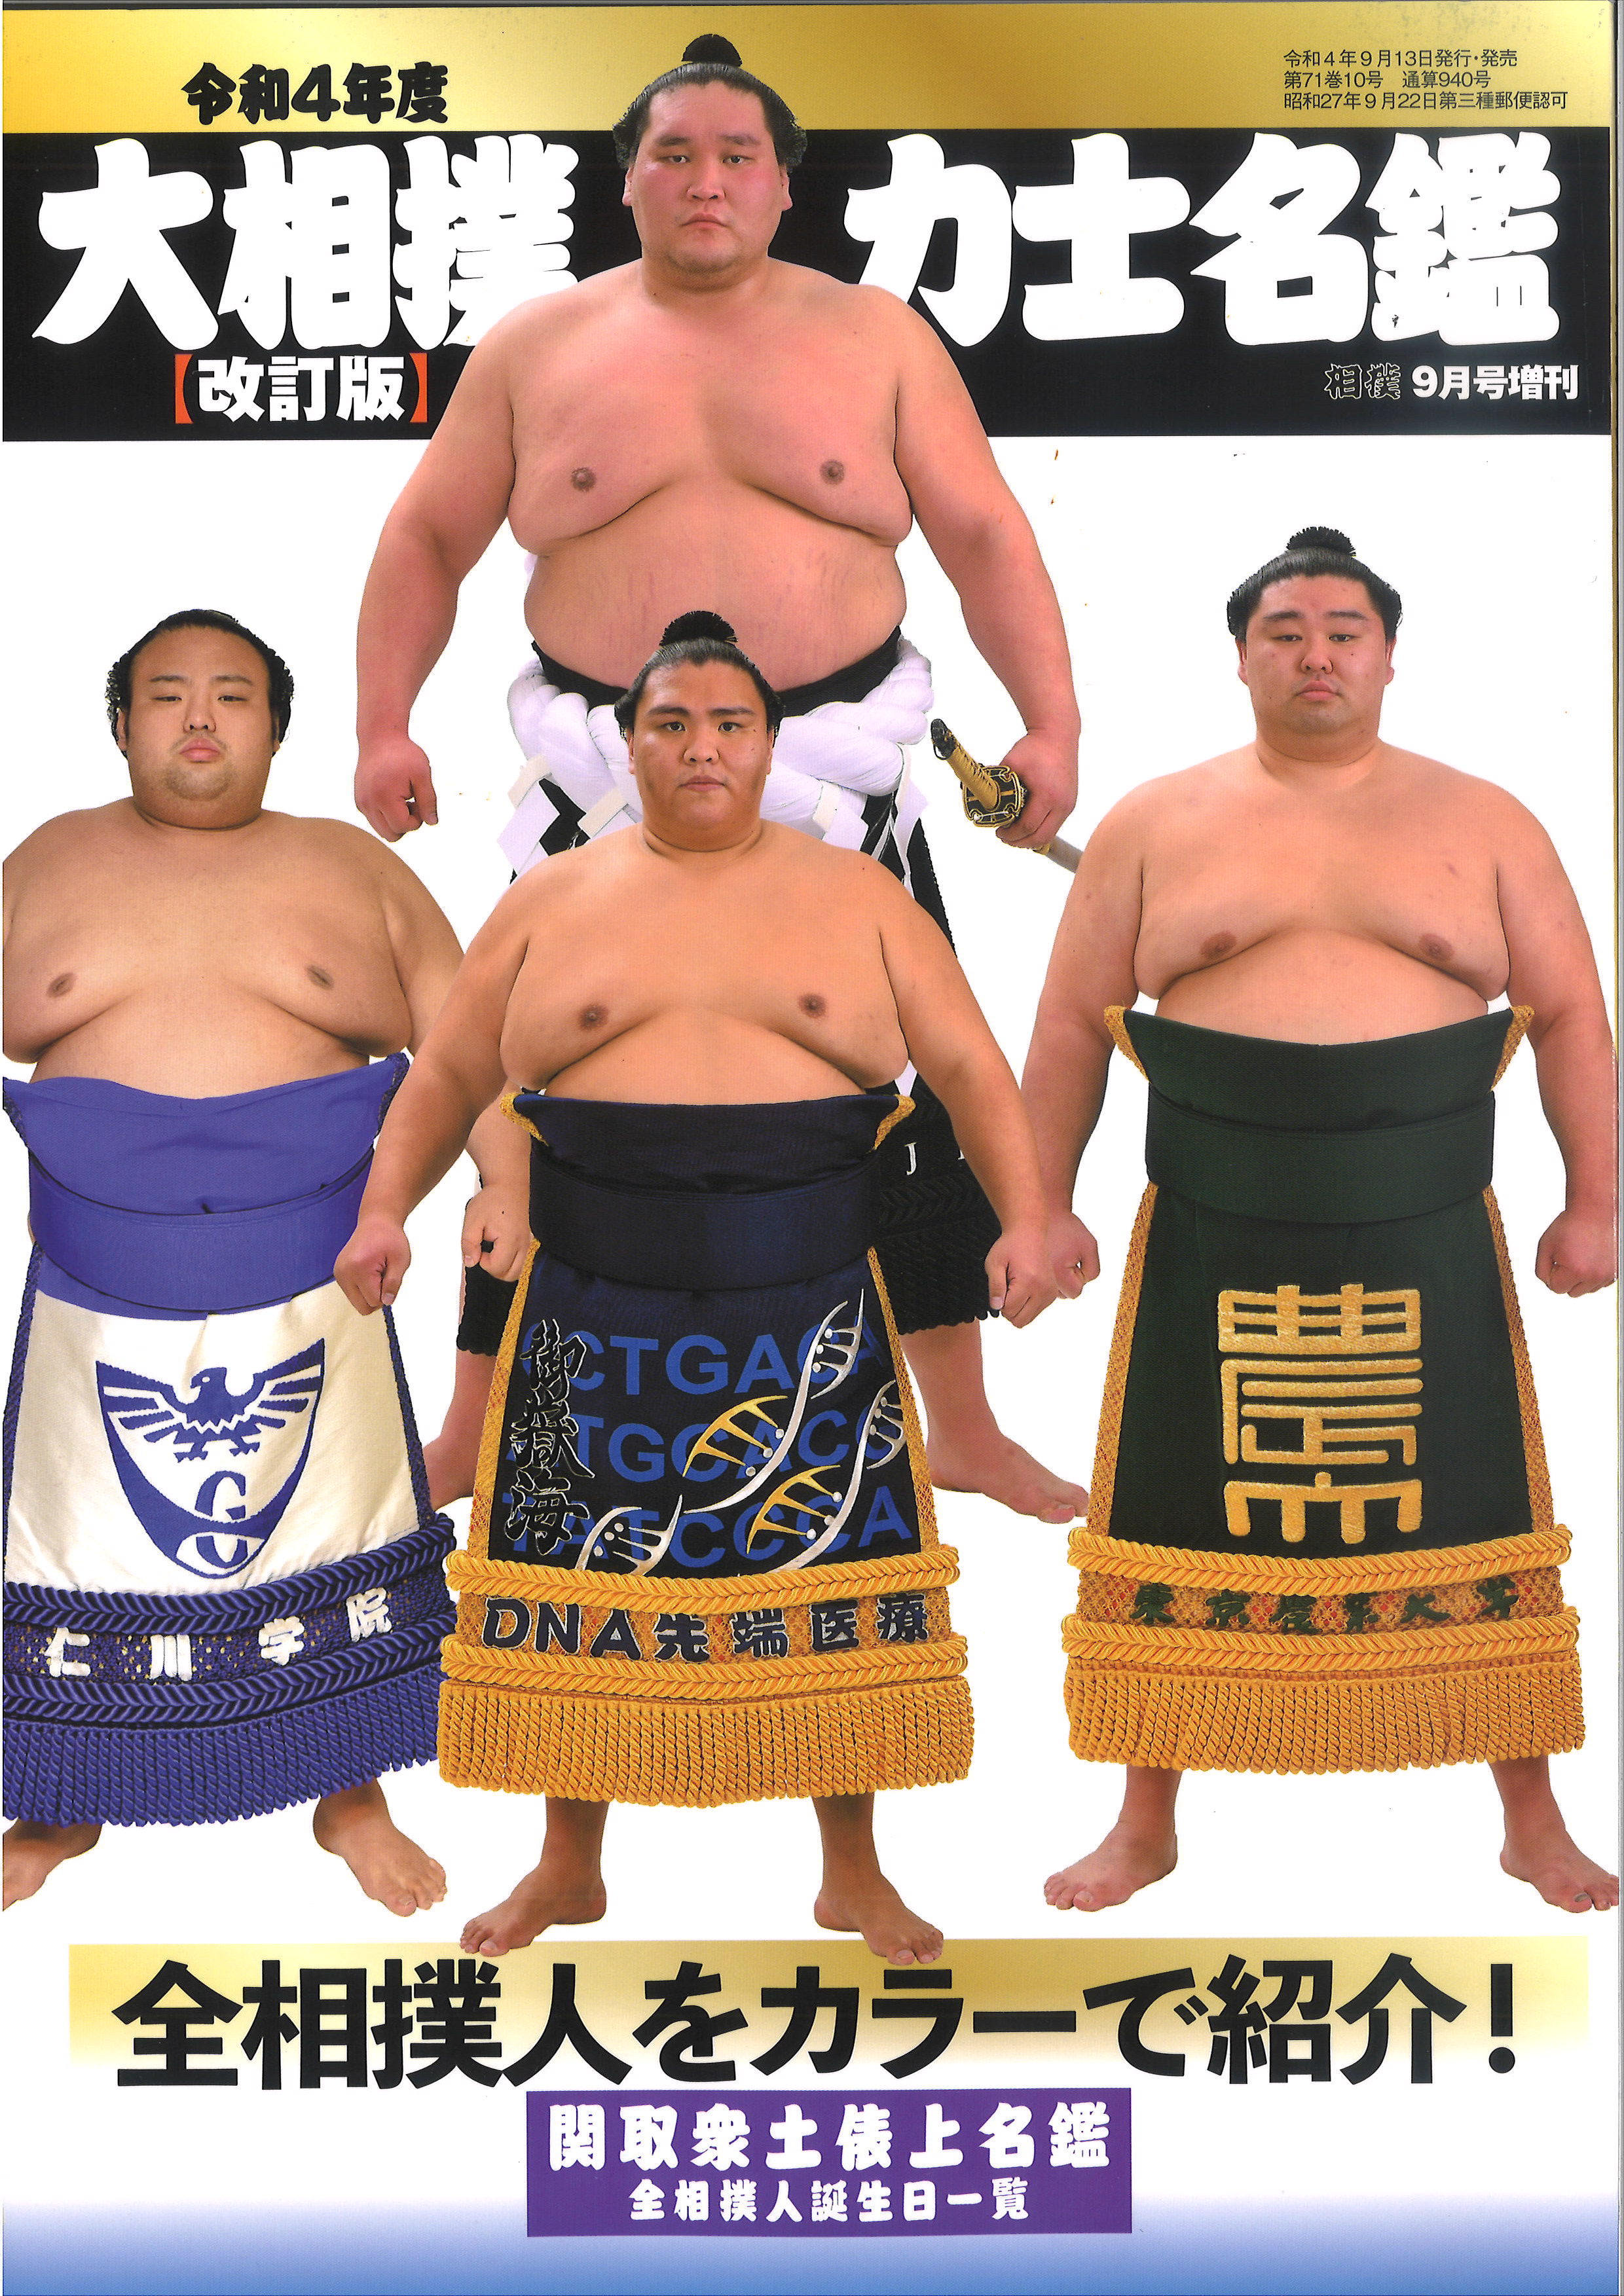 A11-042 別冊 相撲 秋季号 国技相撲のすべて ベースボール・マガジン社-